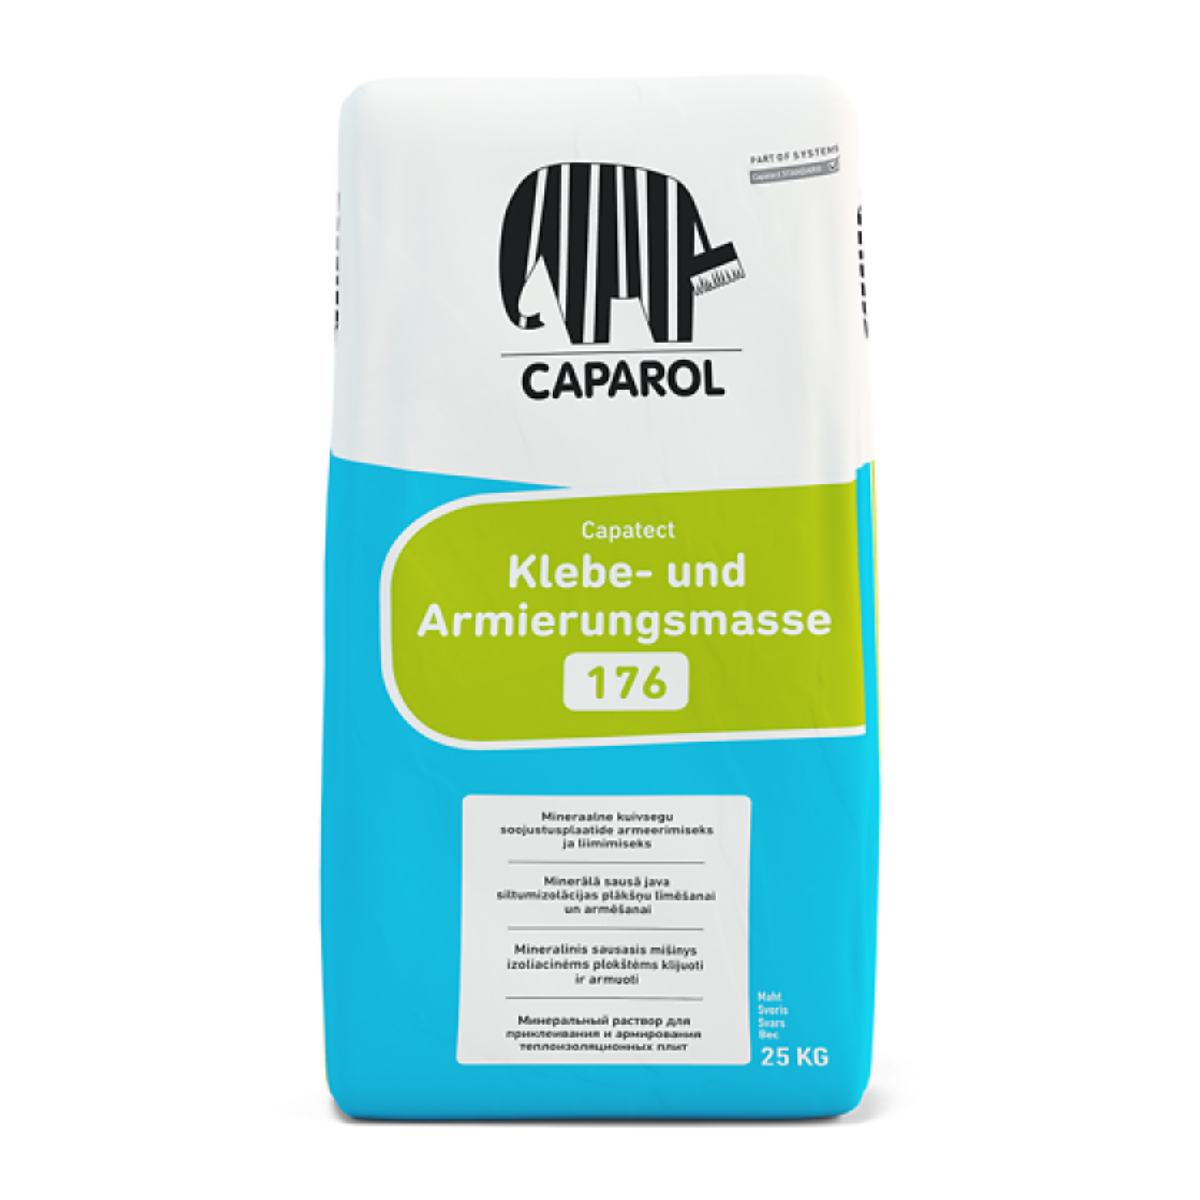 Caparol Capatect Klebe-und Armierungsmasse 176 līmēšanas un armēšanas java polistirolam un minerālvatei, 25kg